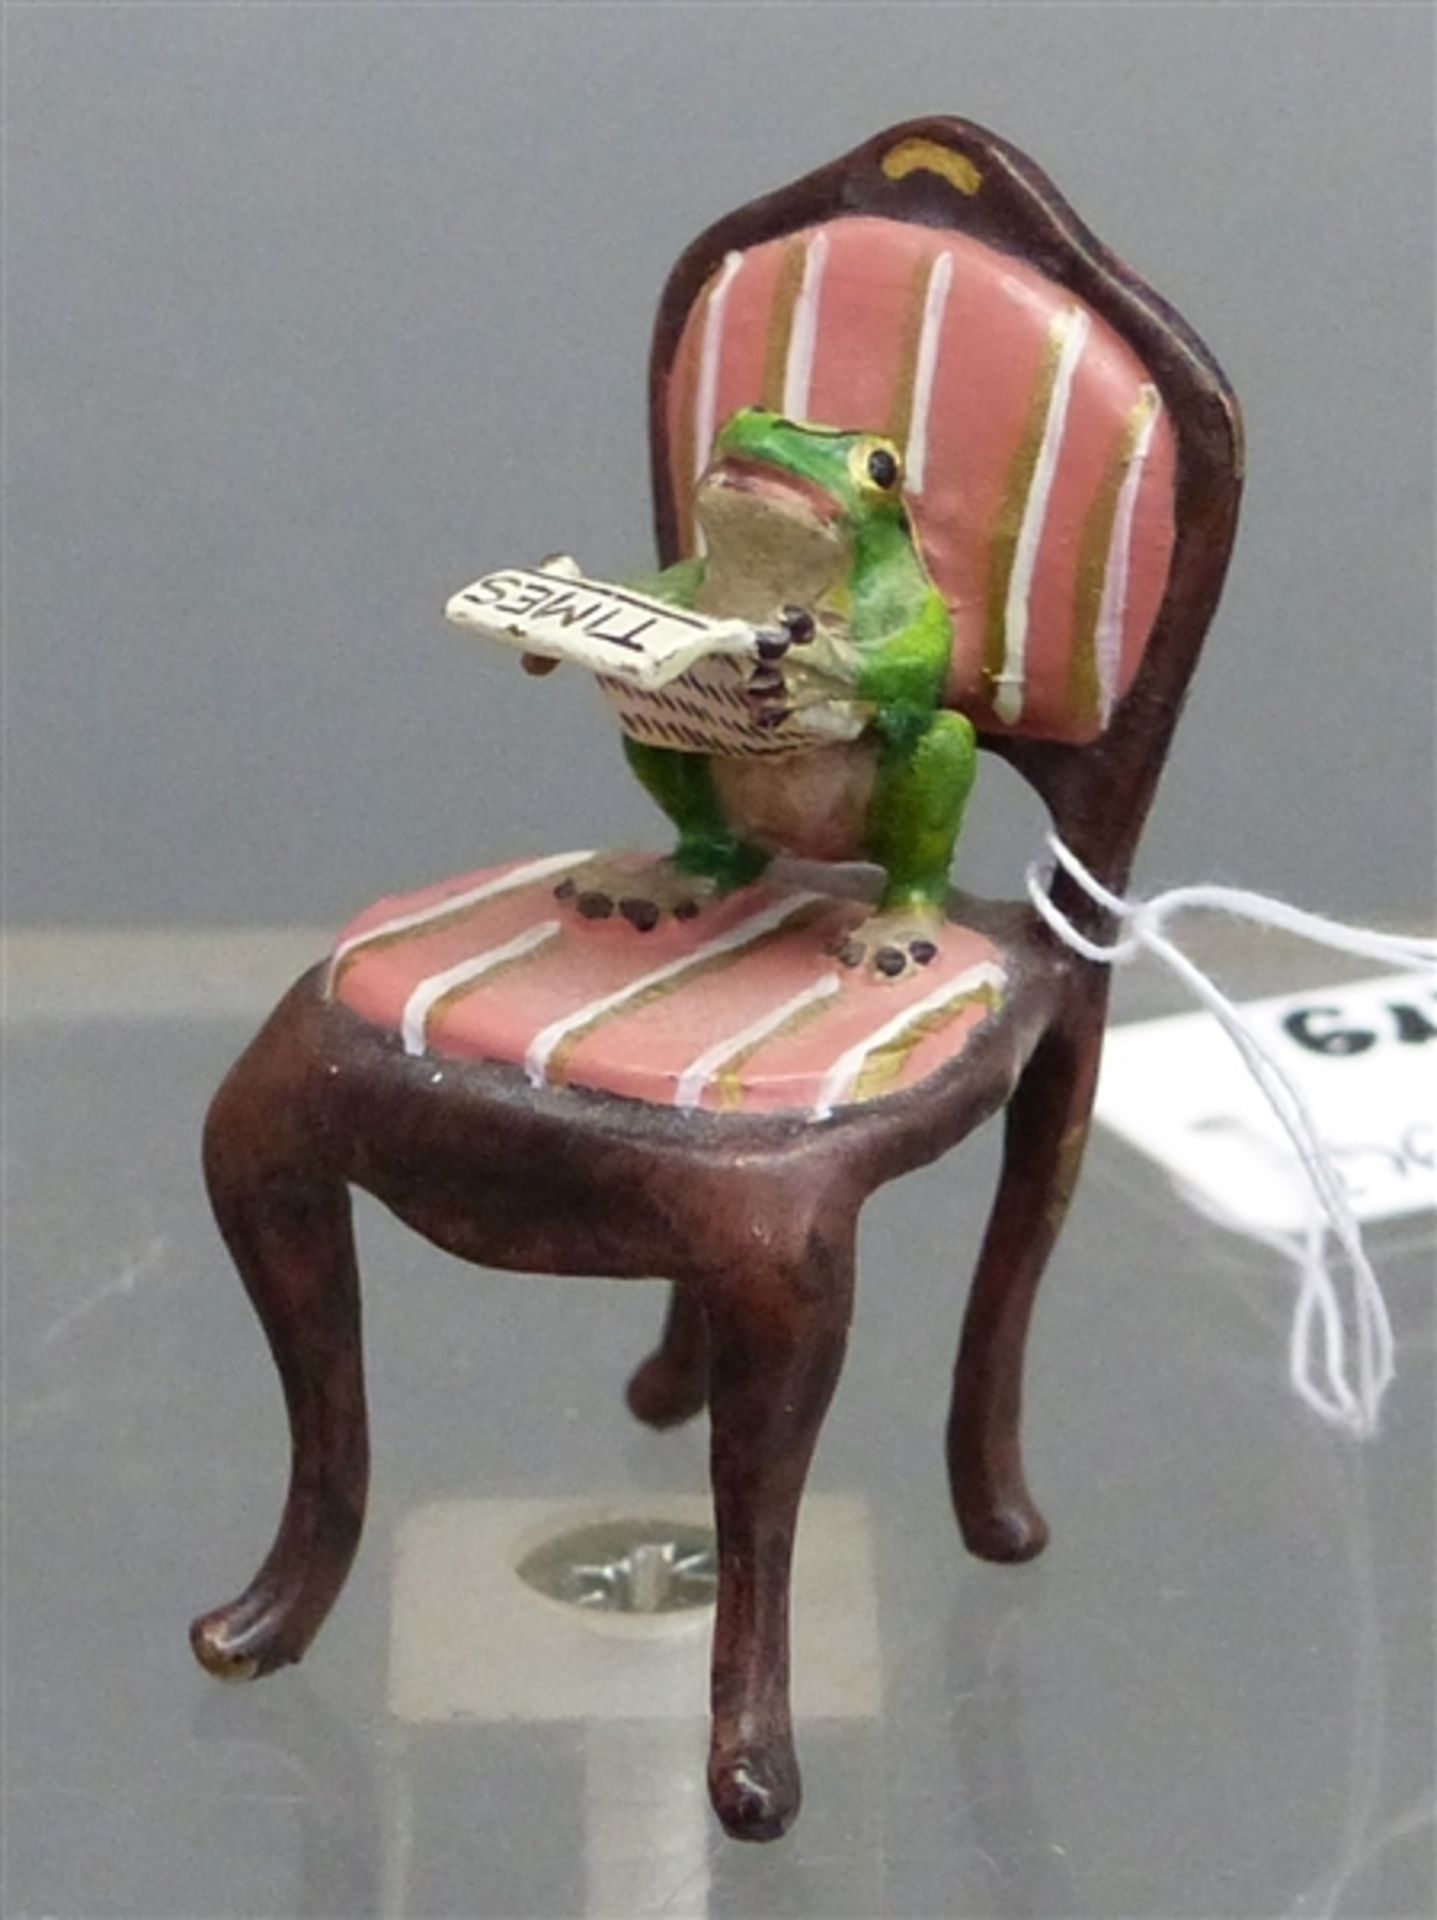 Wiener Bronze Zeitung lesender Frosch sitzt auf einem Barockstuhl, 20. Jh., bunt bemalt, h 4,5 cm,